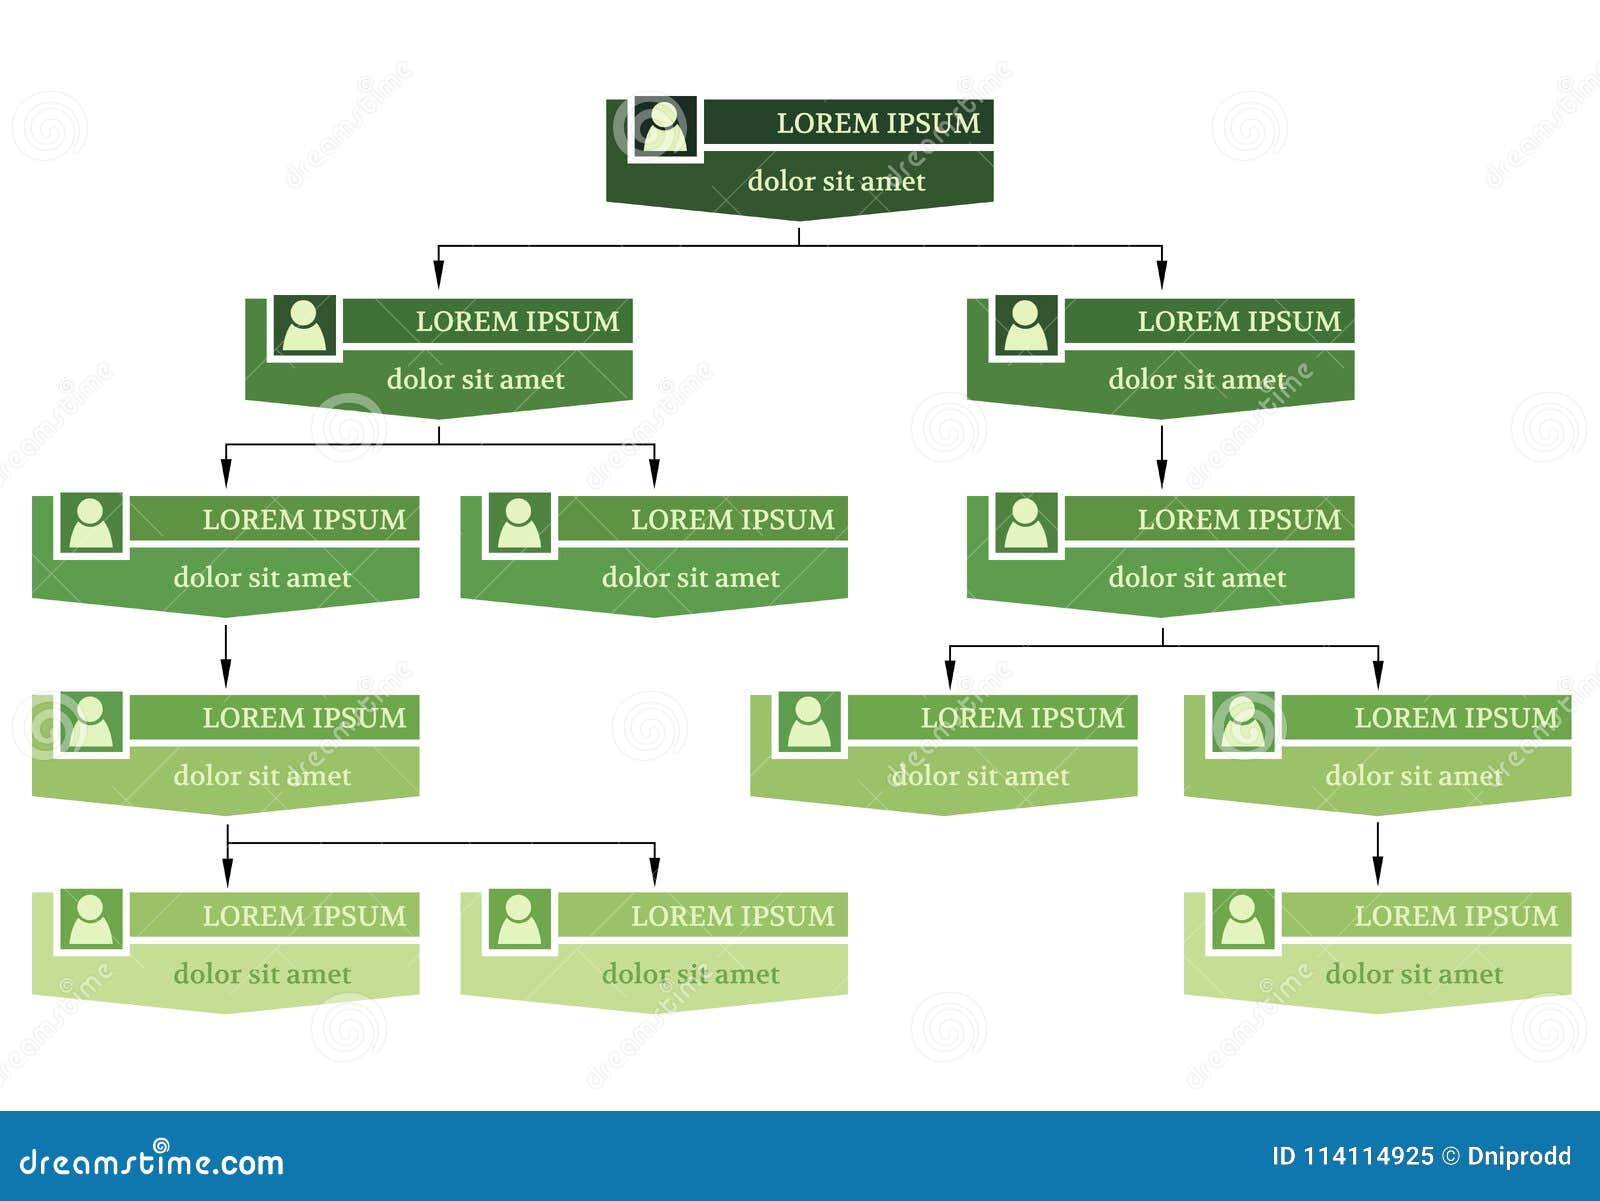 Тег организации. Организационная структура зеленая грядка. Концепция зеленой экспертной группы.